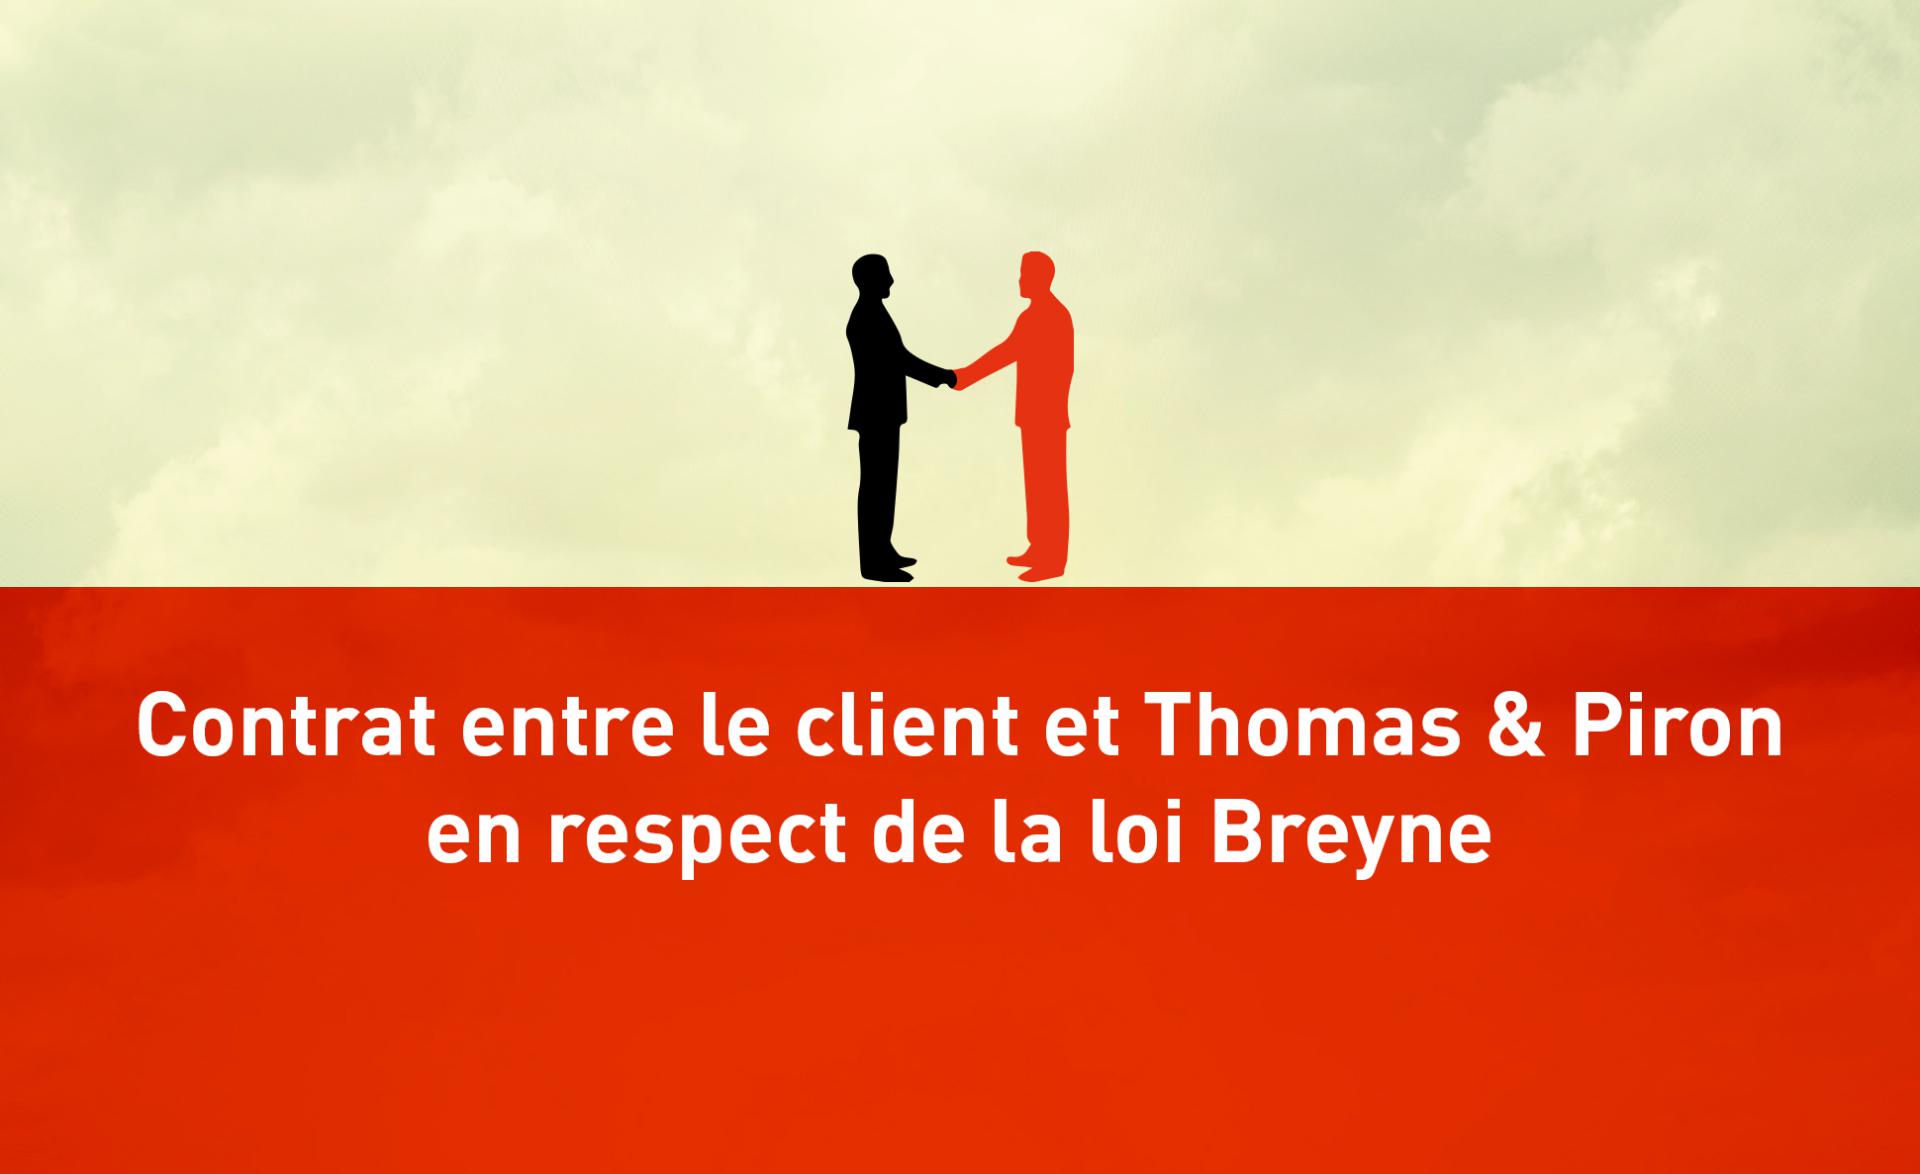 Contrat entre le client et Thomas & Piron en respect de la loi Breyne